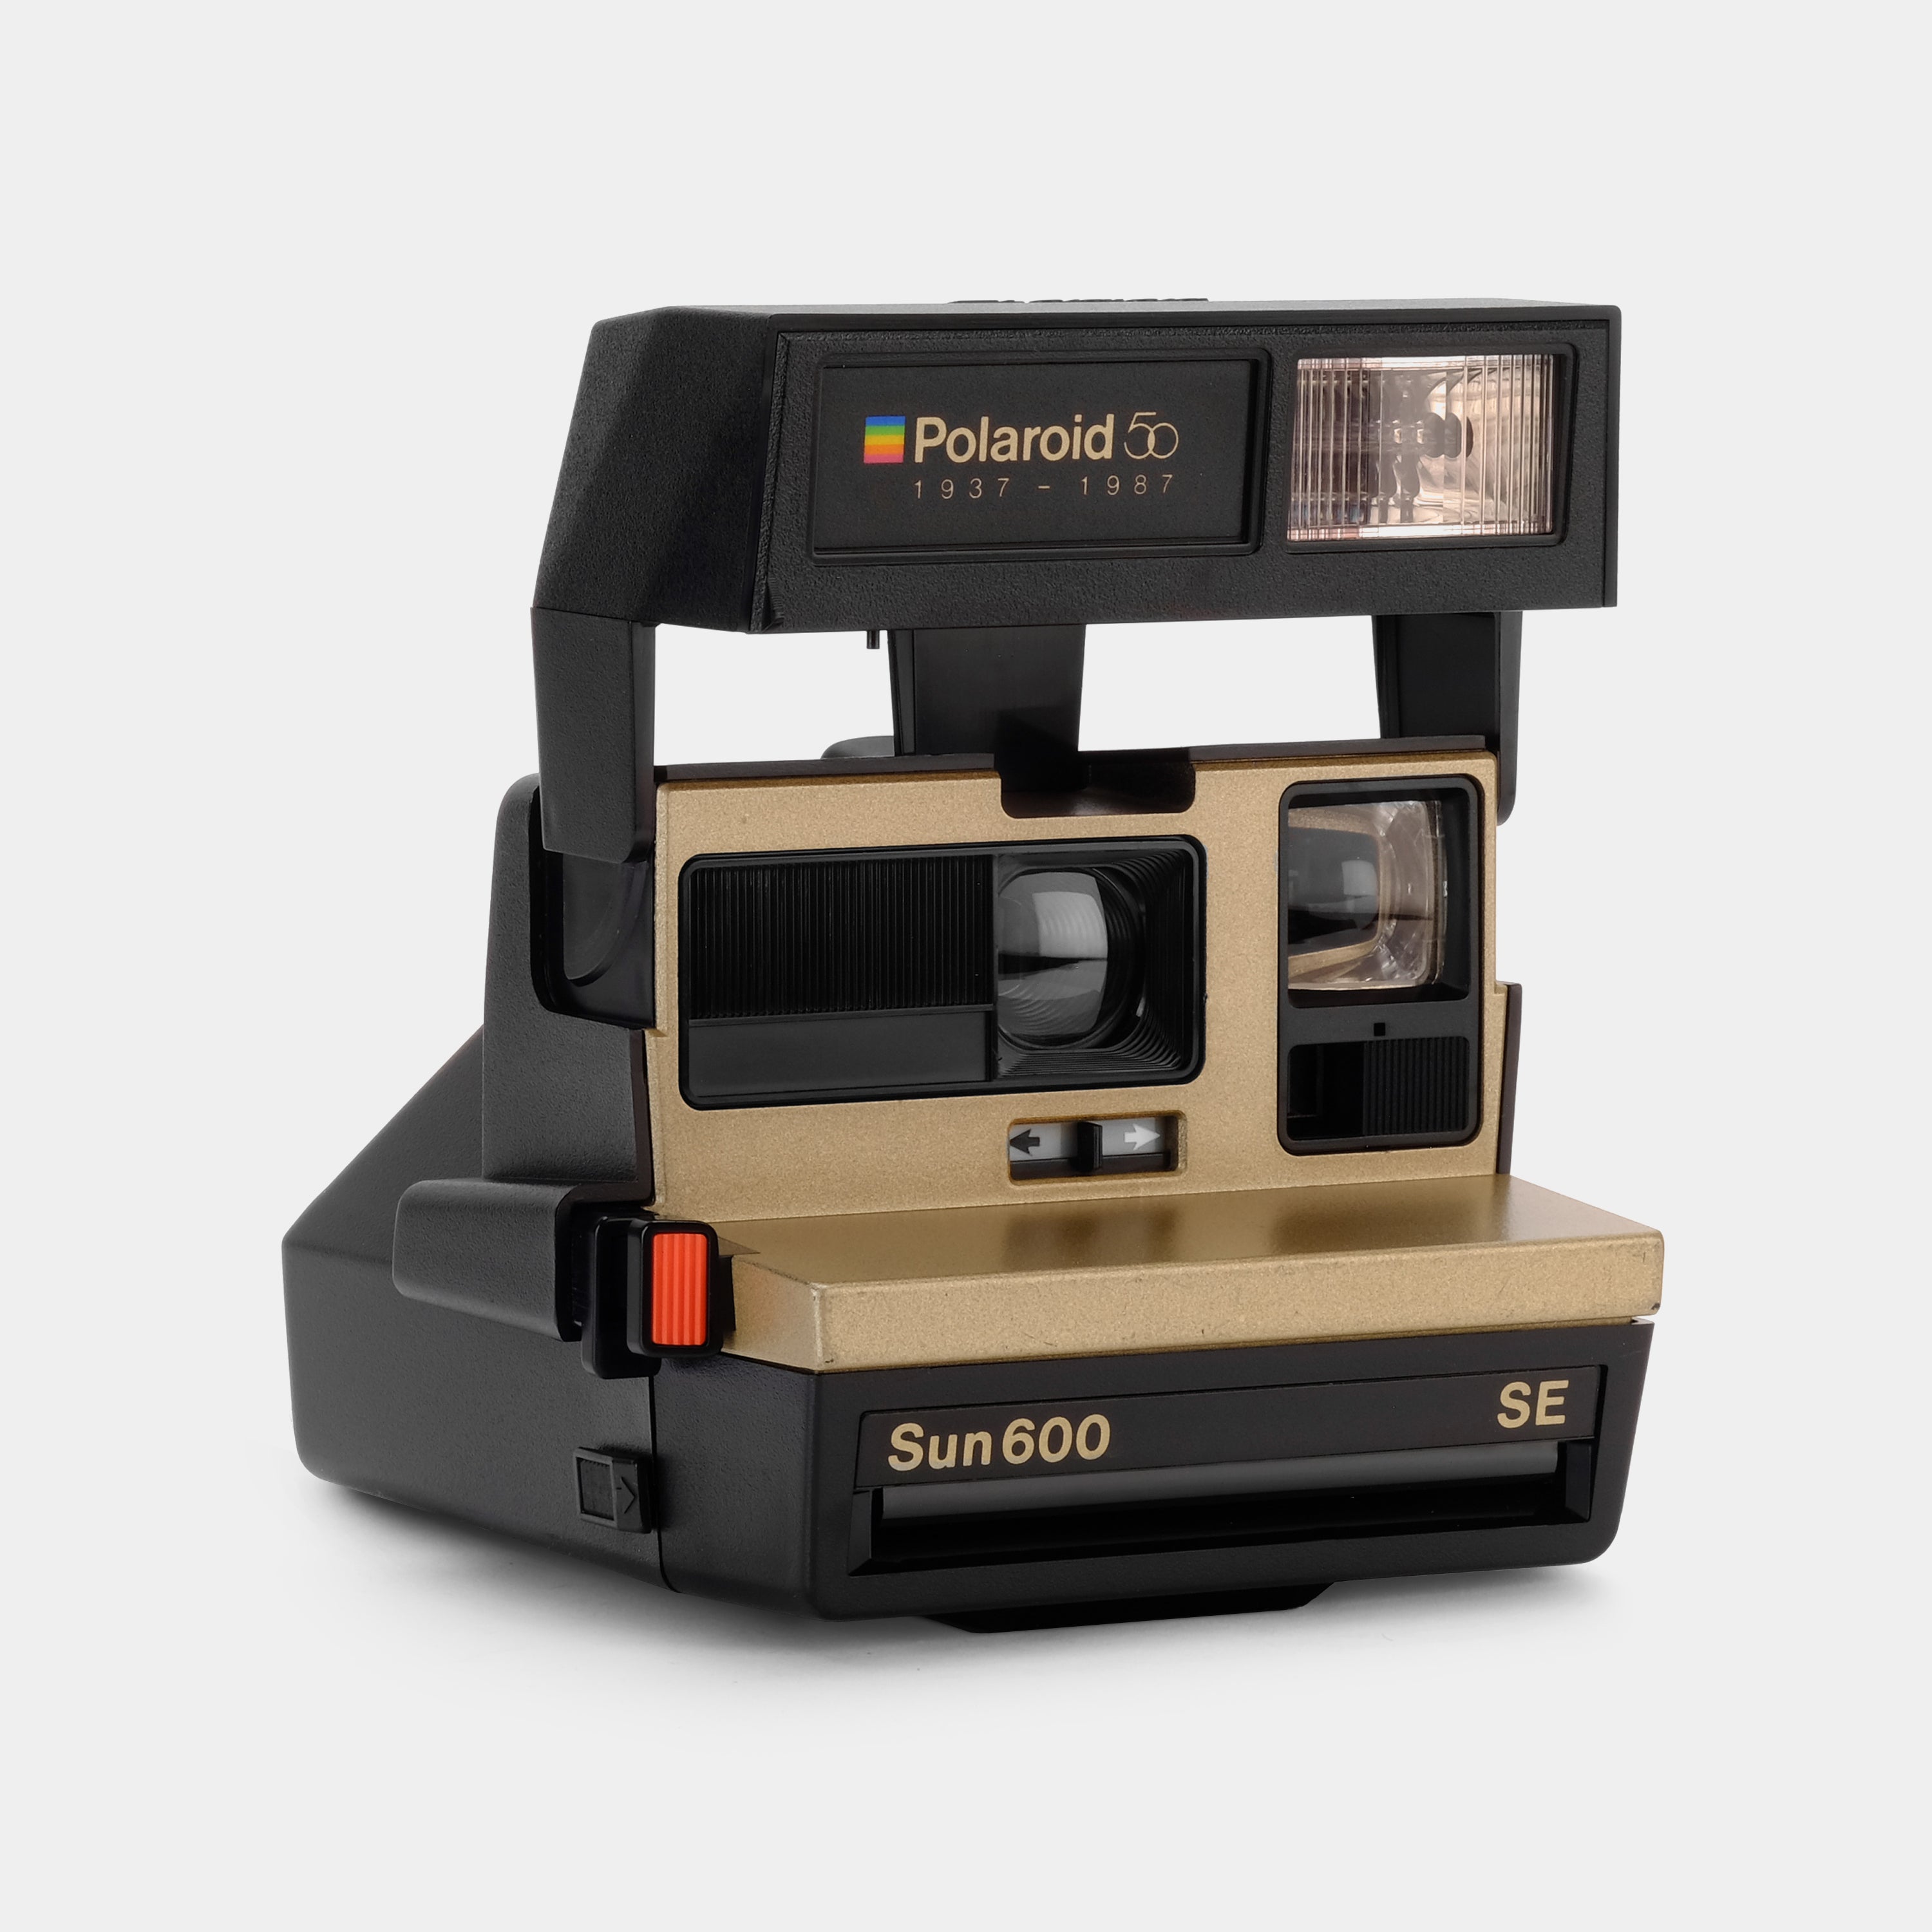 Polaroid 600 Sun600 SE 50th Anniversary Edition Gold Instant Film Camera